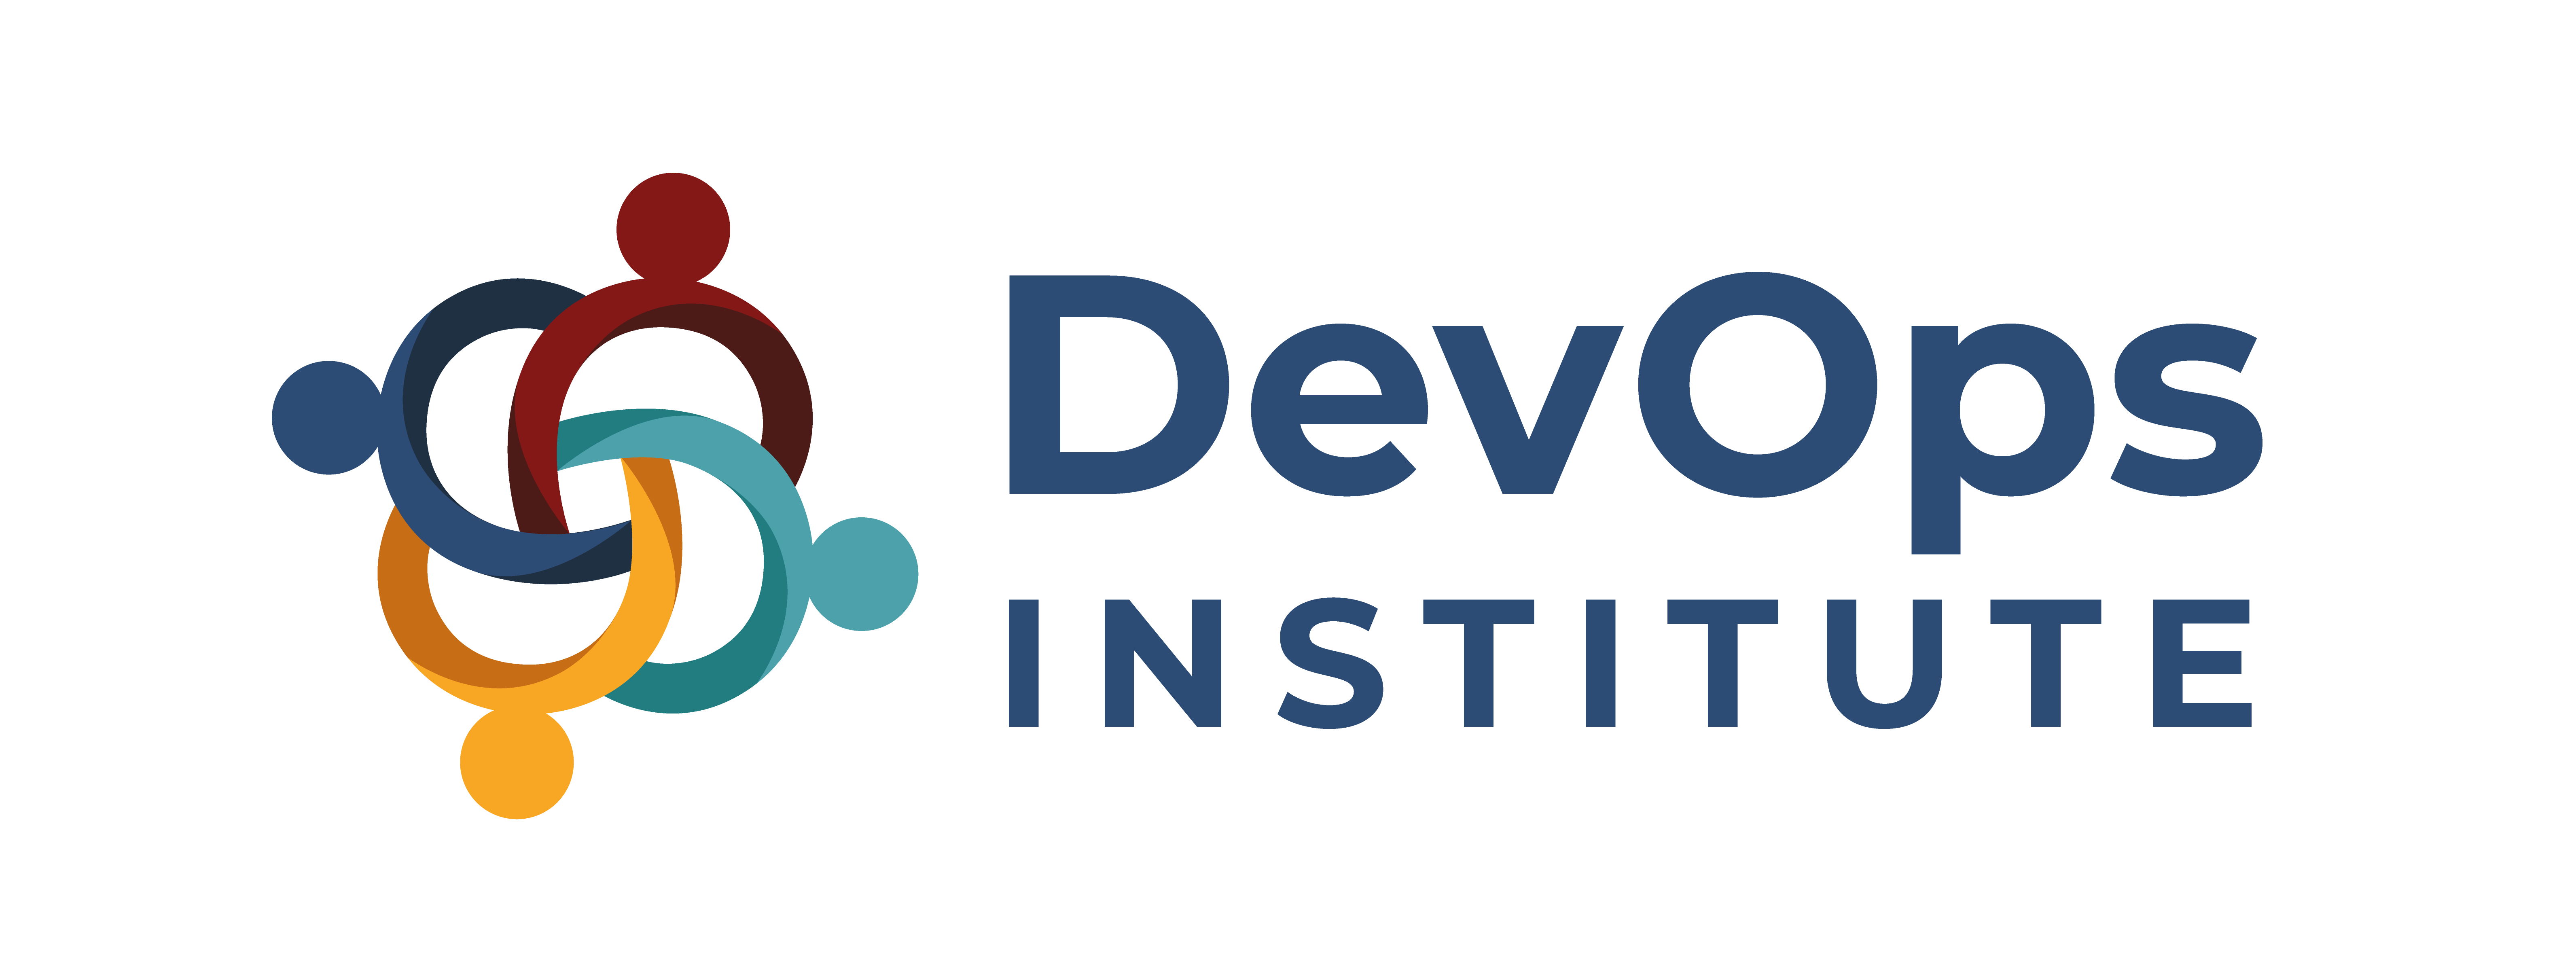 DevOps Institute logo Three Points